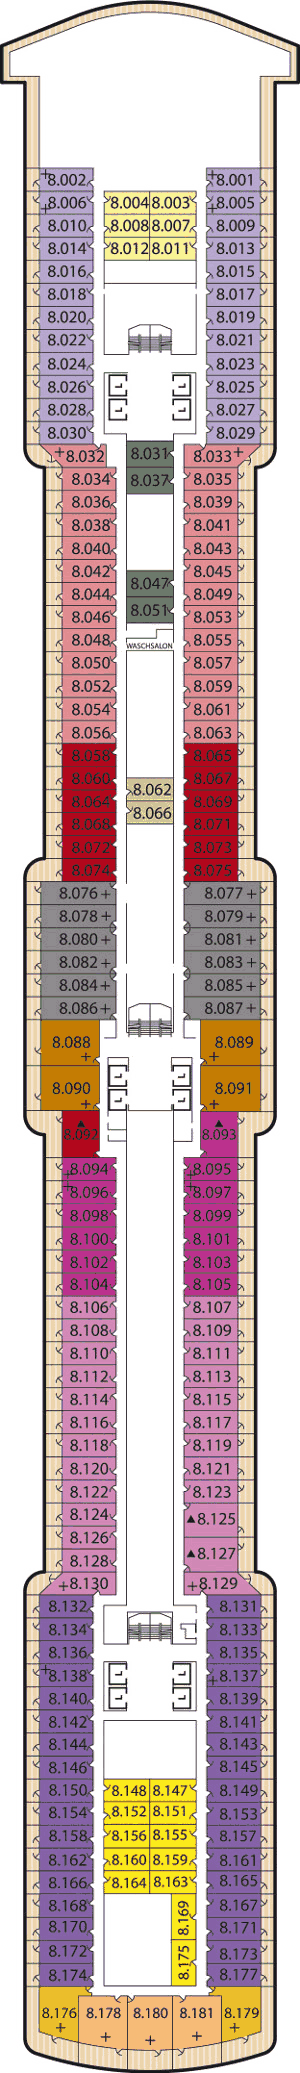 Queen Elizabeth - Decksplan Deck 8